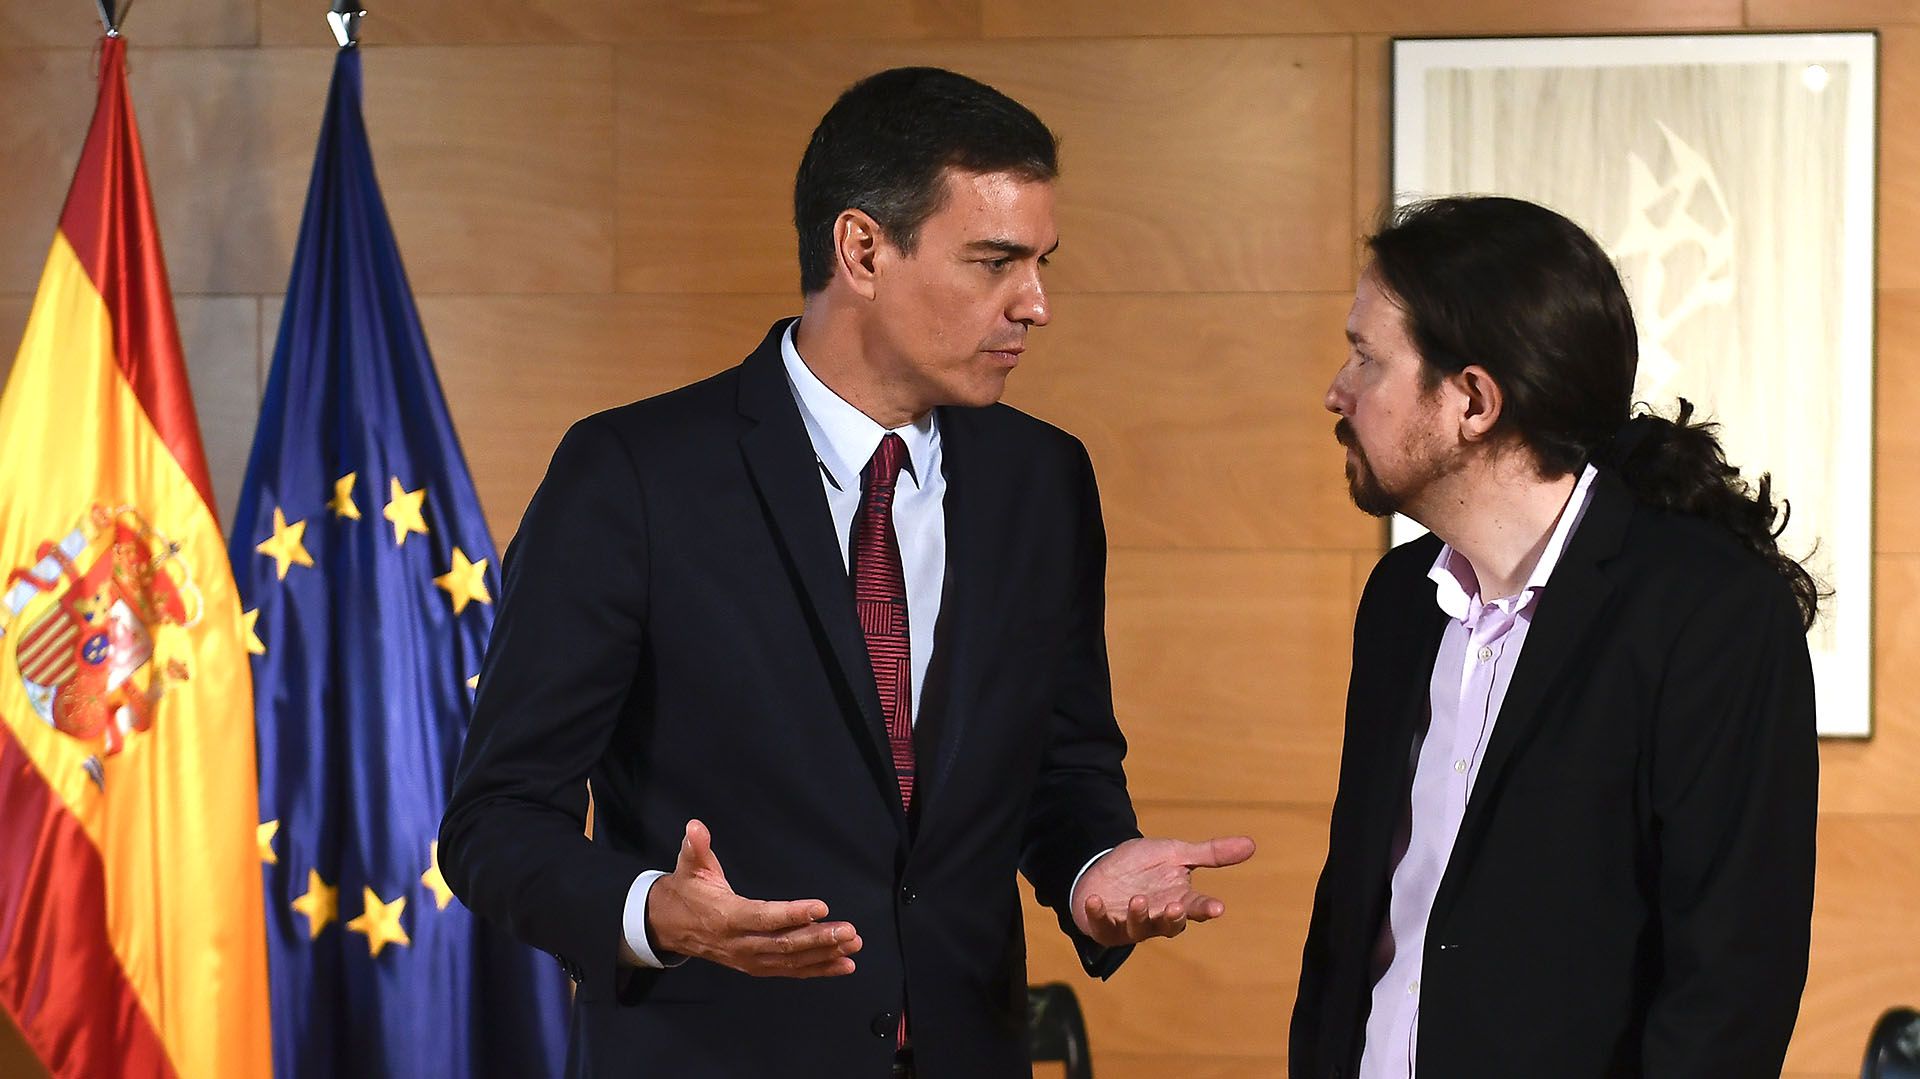 Pedro Sánchez se mantuvo firme en su negativa de incorporar a Pablo Iglesias u cualquier otro miembro de Podemos a su gabinete, y ya parece imposible un acuerdo entre las fuerzas de izquierda para formar gobierno (AFP)